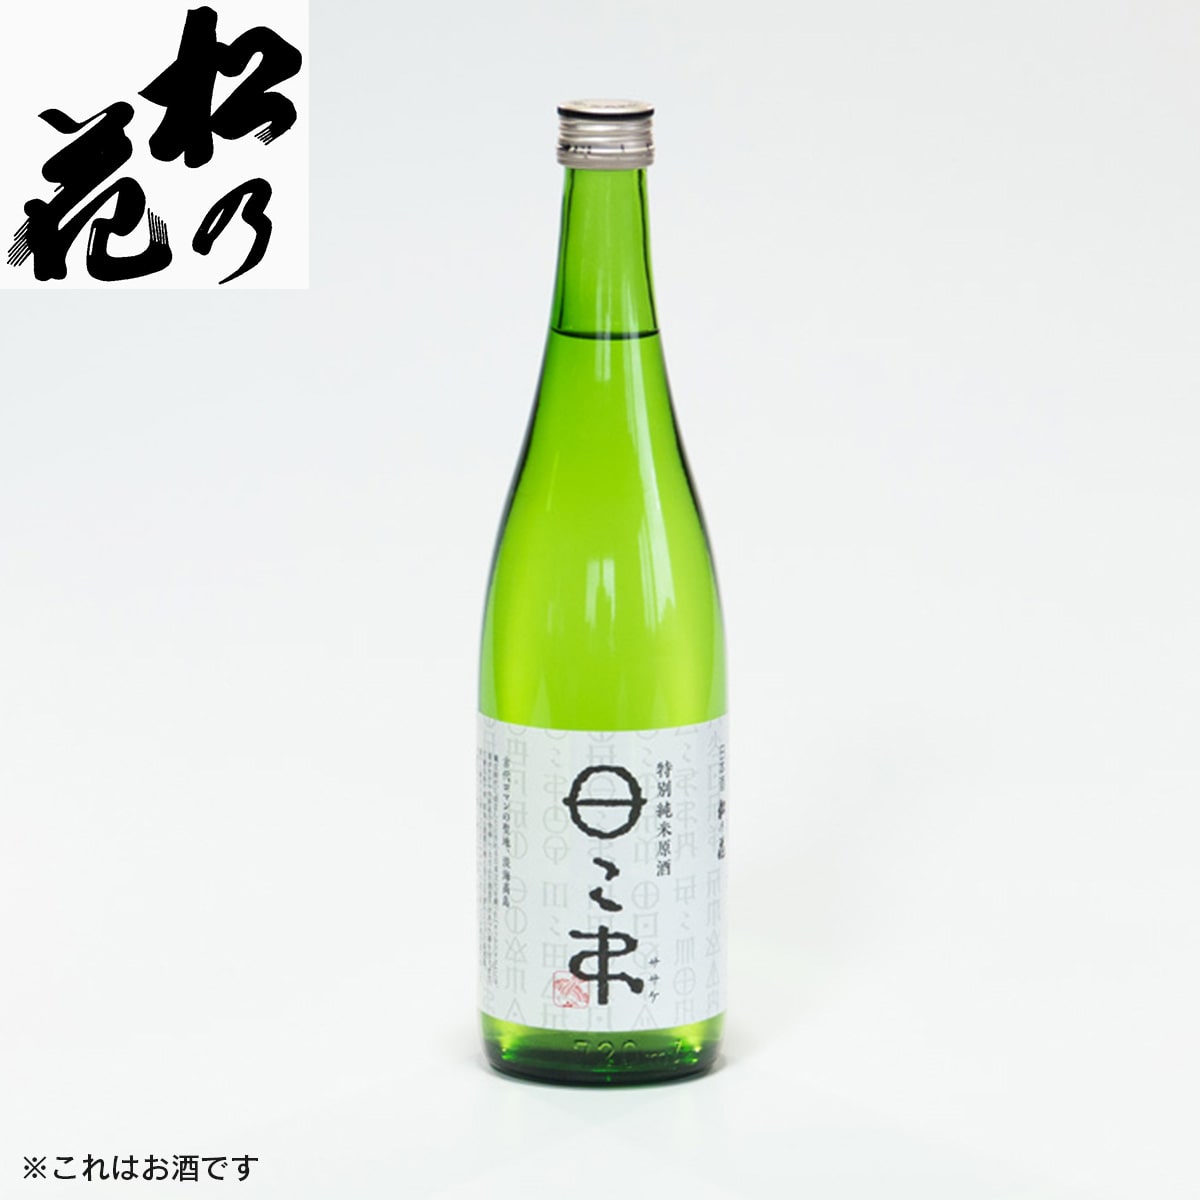 【松の花】松の花 特別純米原酒 ササケ 720ml